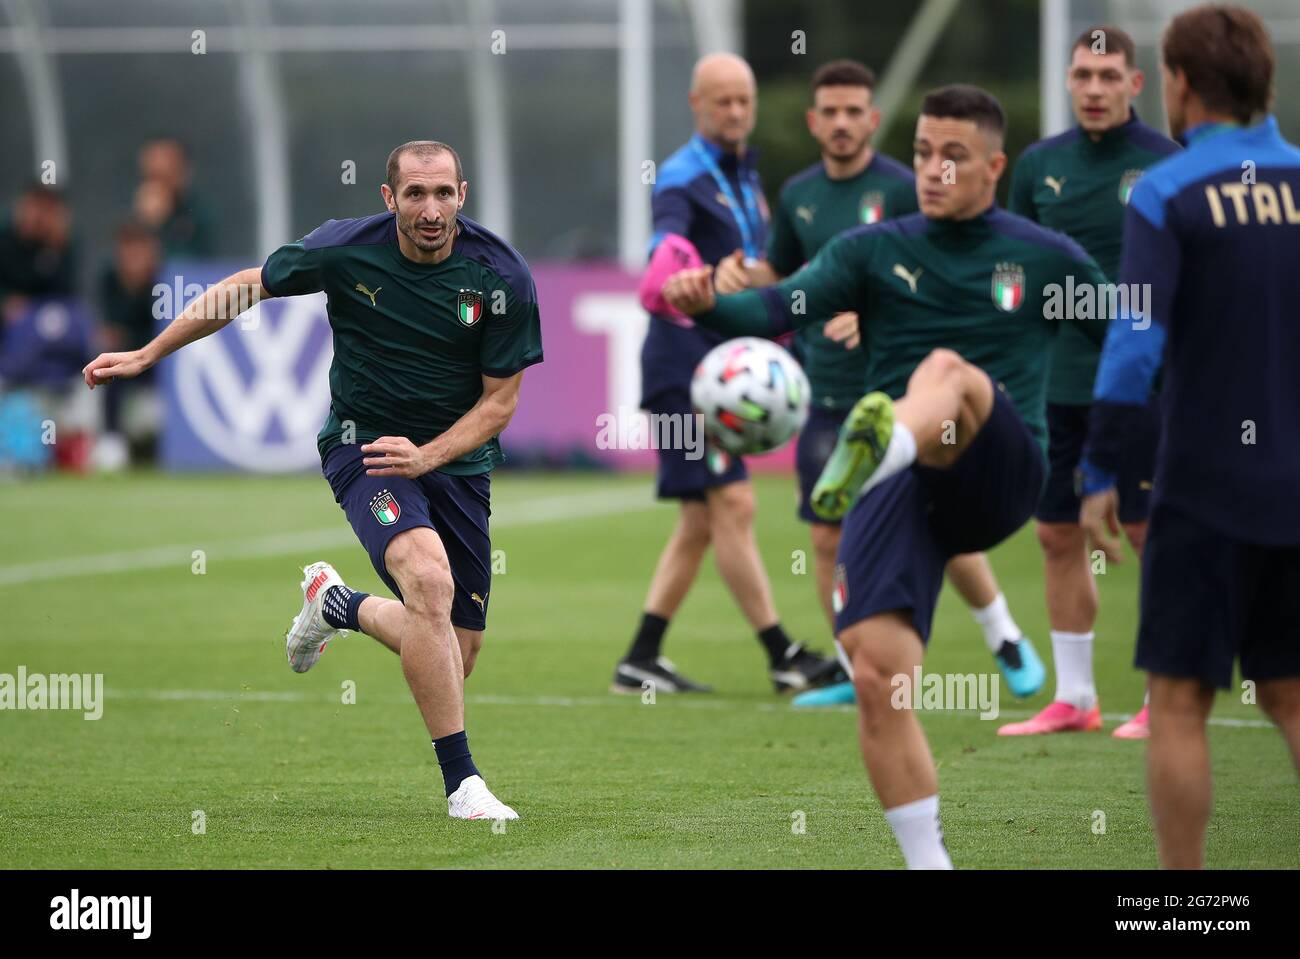 Giorgio Chiellini, de l'Italie, pendant une session de formation au terrain d'entraînement de Tottenham Hotspur. Date de la photo: Samedi 10 juillet 2021. Banque D'Images